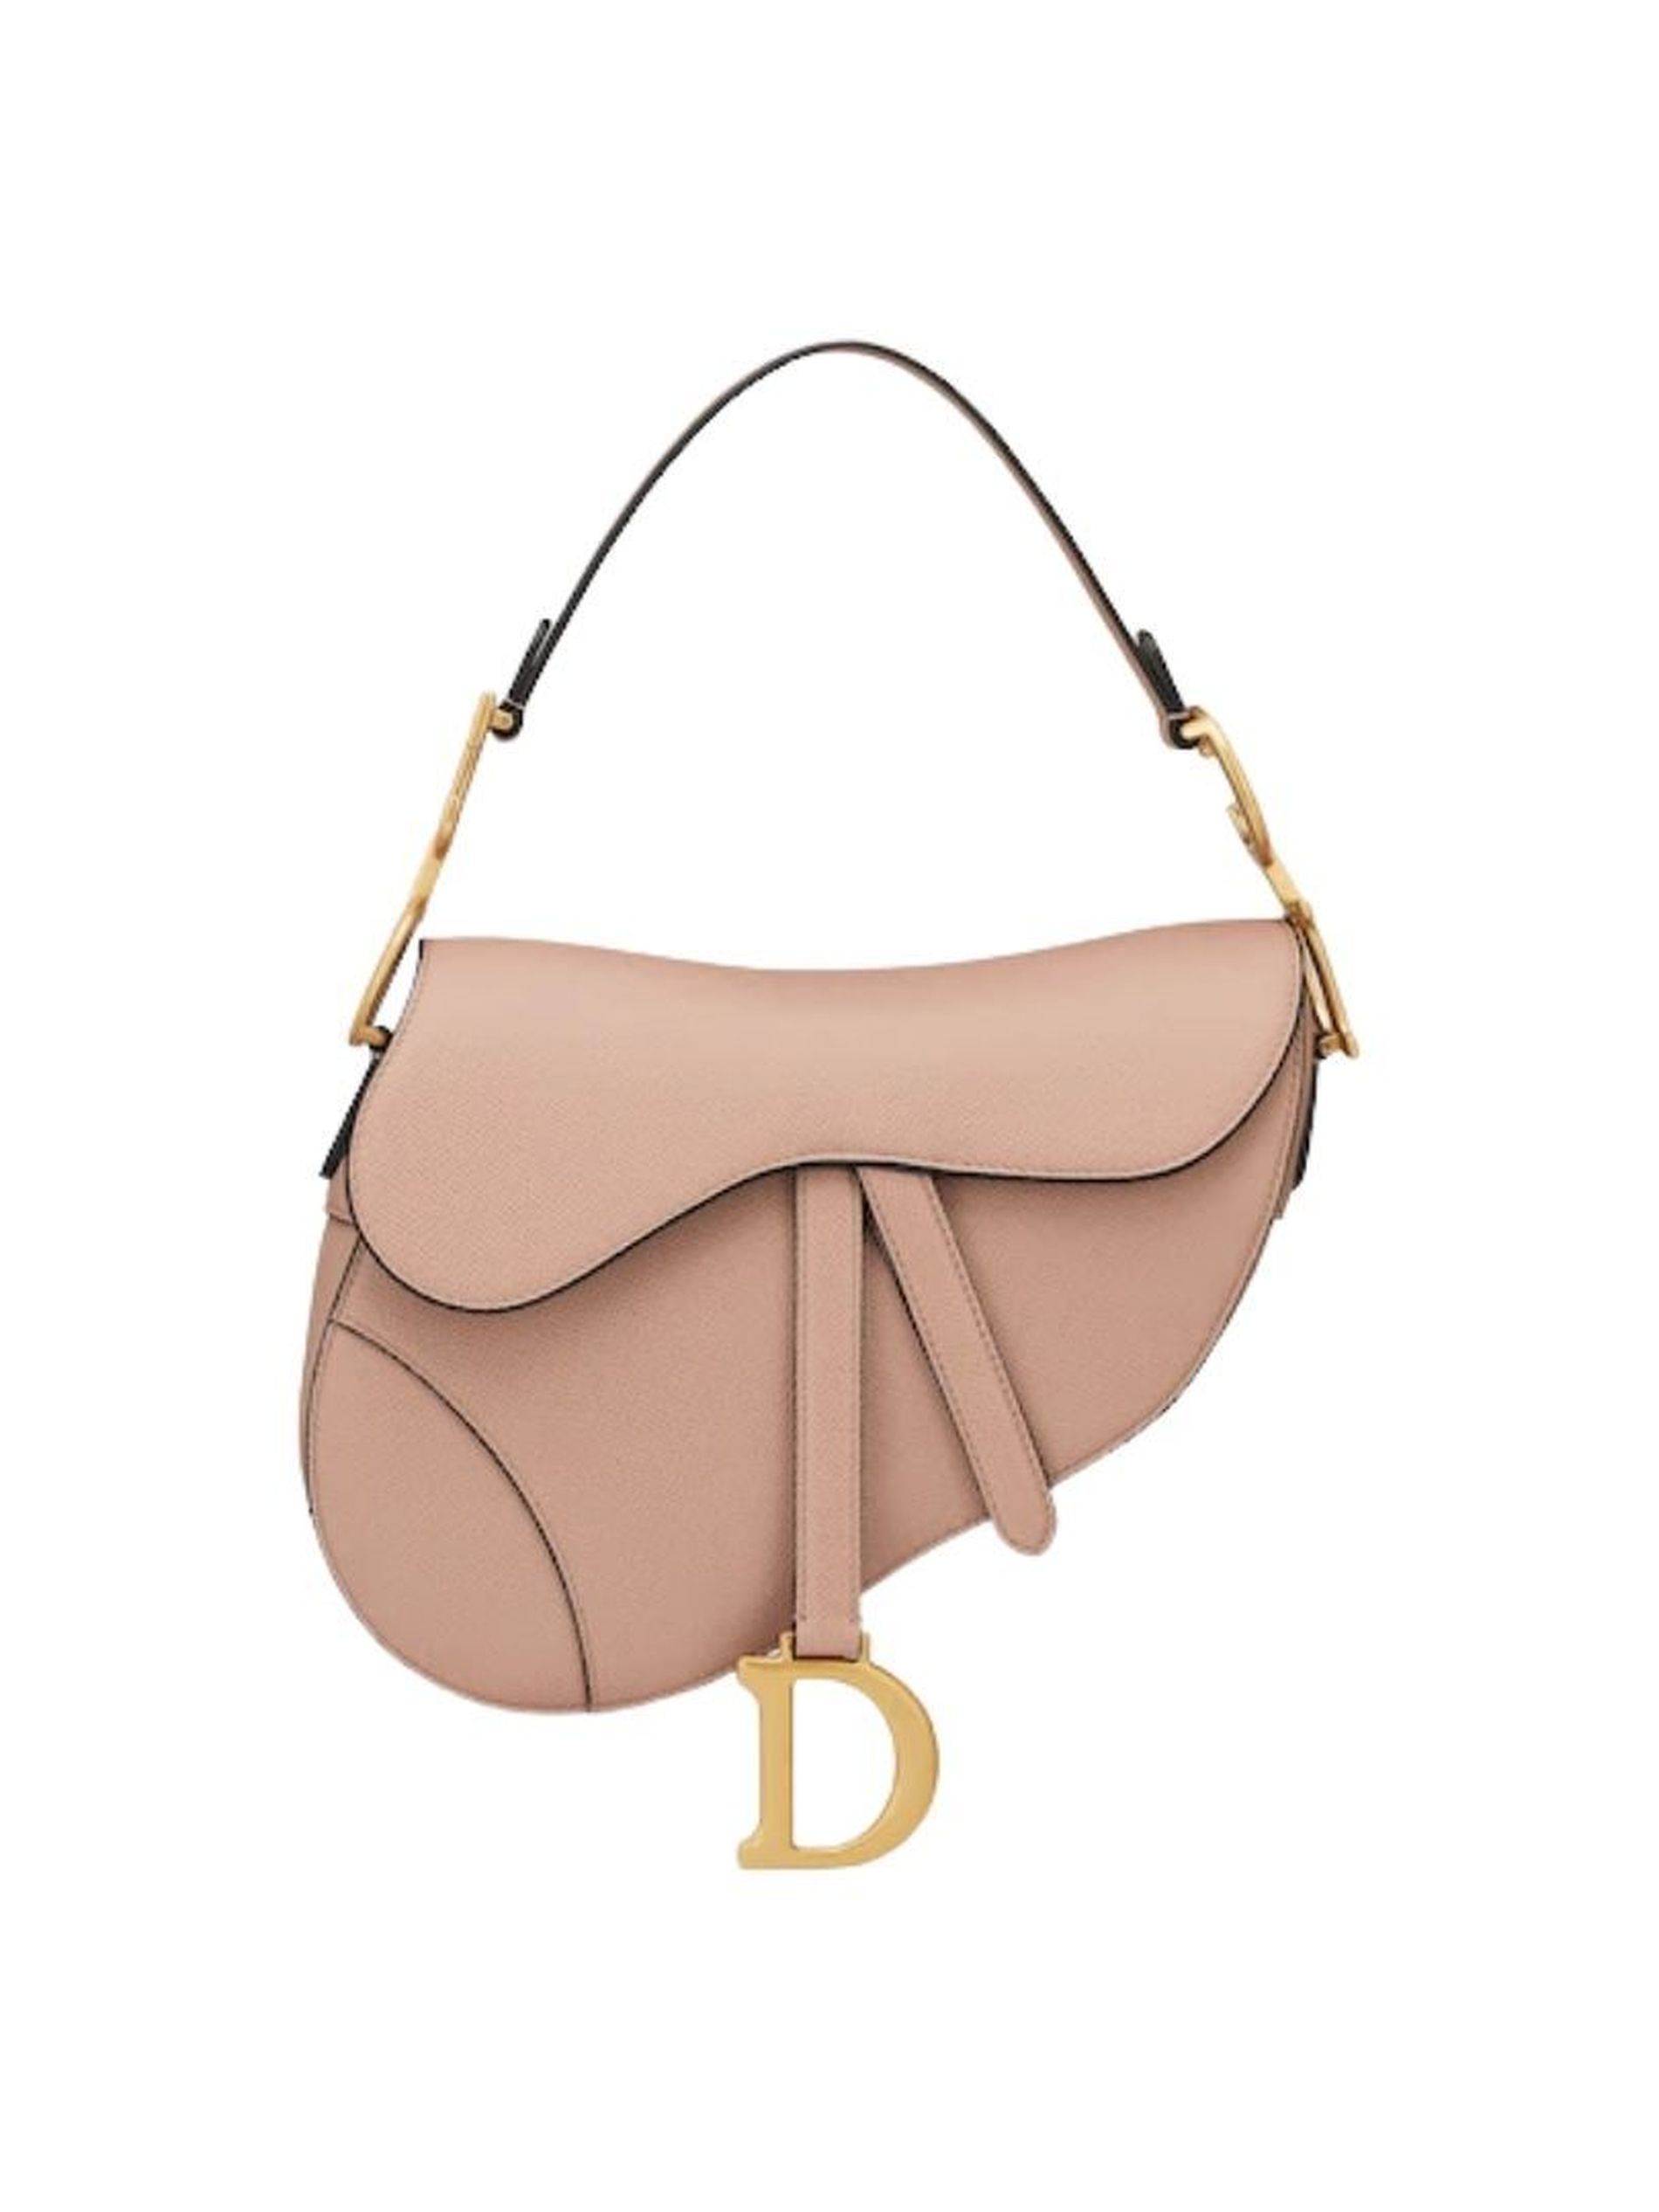 Our Favourite Christian Dior Handbags